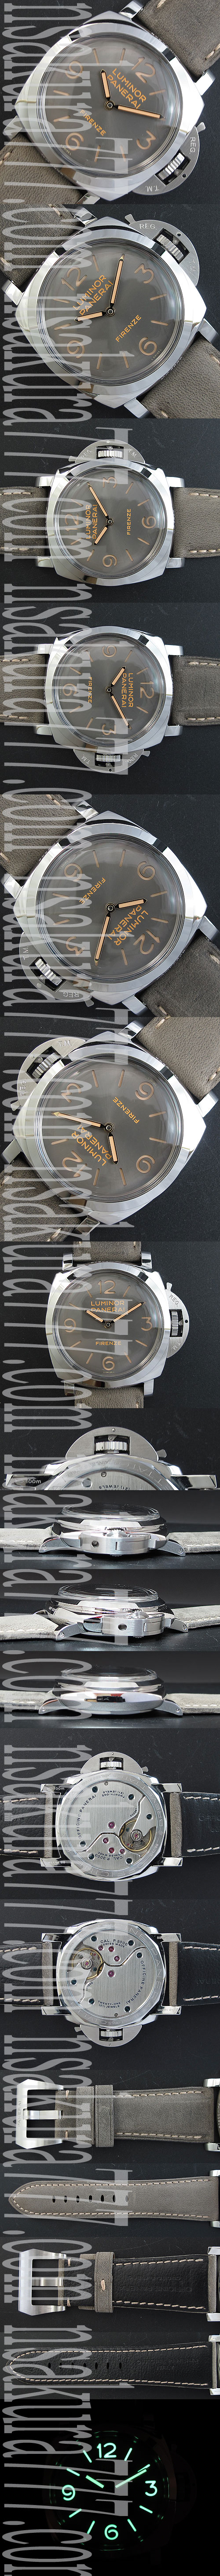 楽しい買い物 PANERAI PAM605 スーパーコピー時計 21600振動 手巻き スーパールミナンス(夜光)